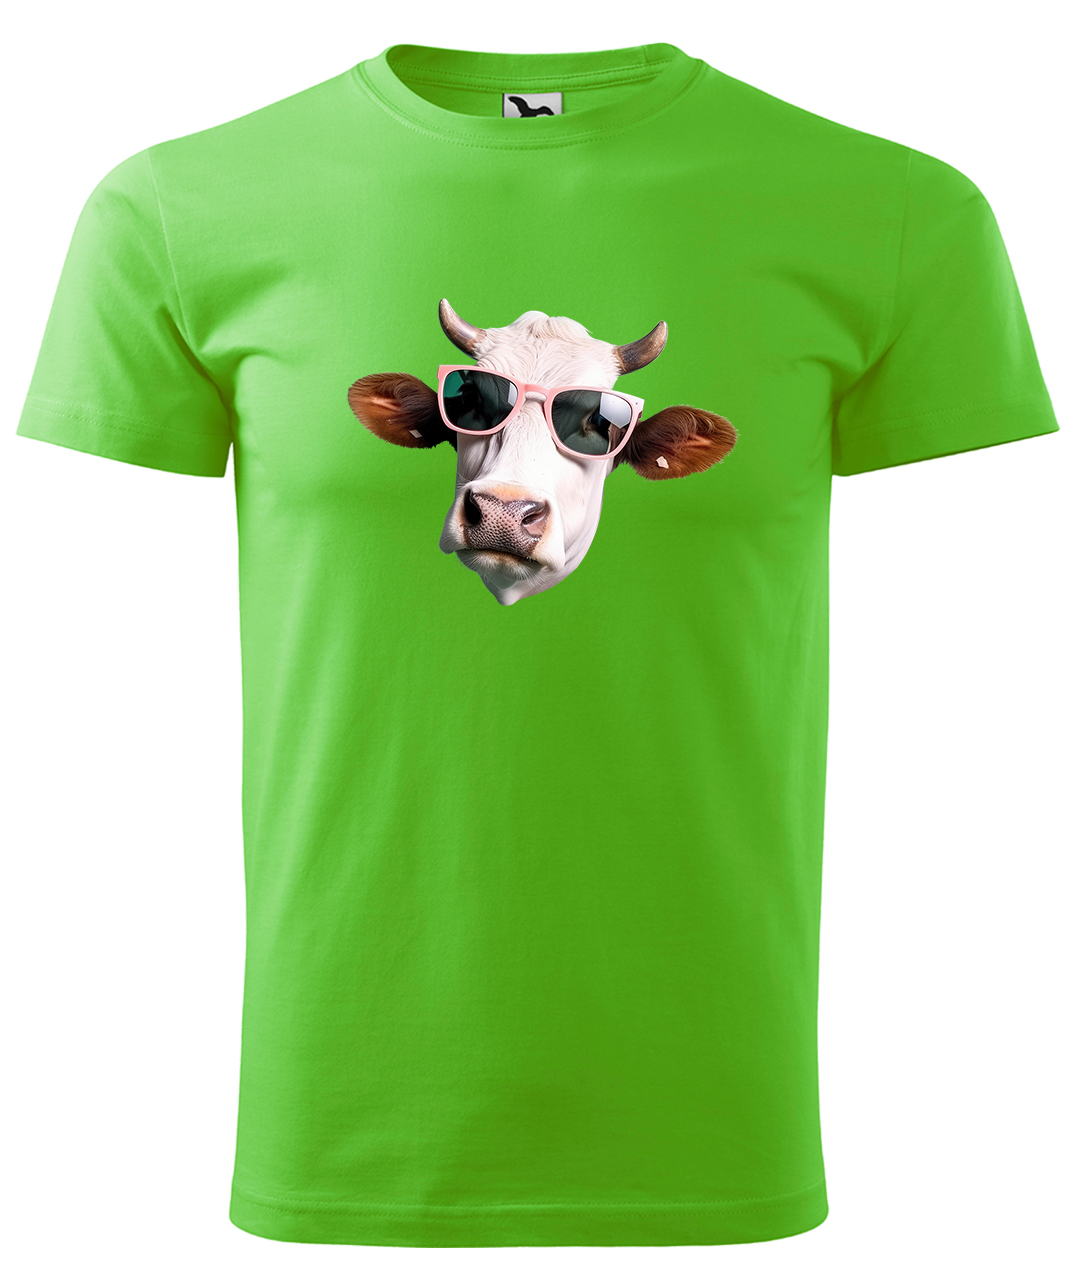 Dětské tričko s krávou - Kráva v brýlích Velikost: 10 let / 146 cm, Barva: Apple Green (92), Délka rukávu: Krátký rukáv